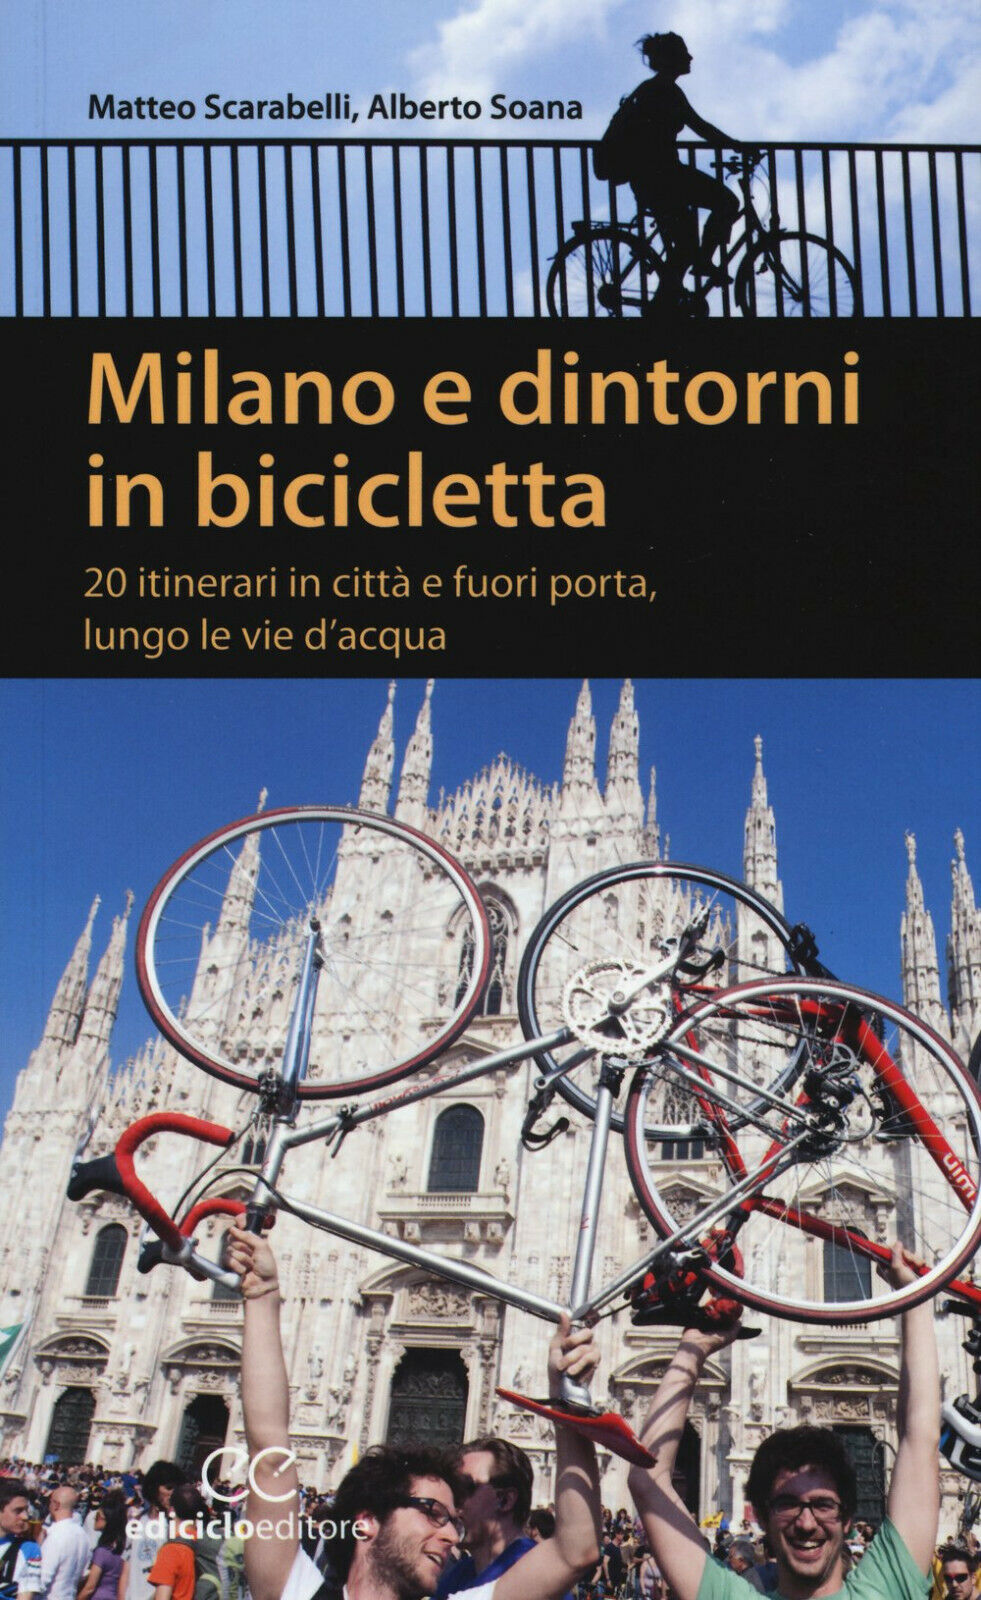 Milano e dintorni in bicicletta - Matteo Scarabelli, Alberto Soana-Ediciclo,2015